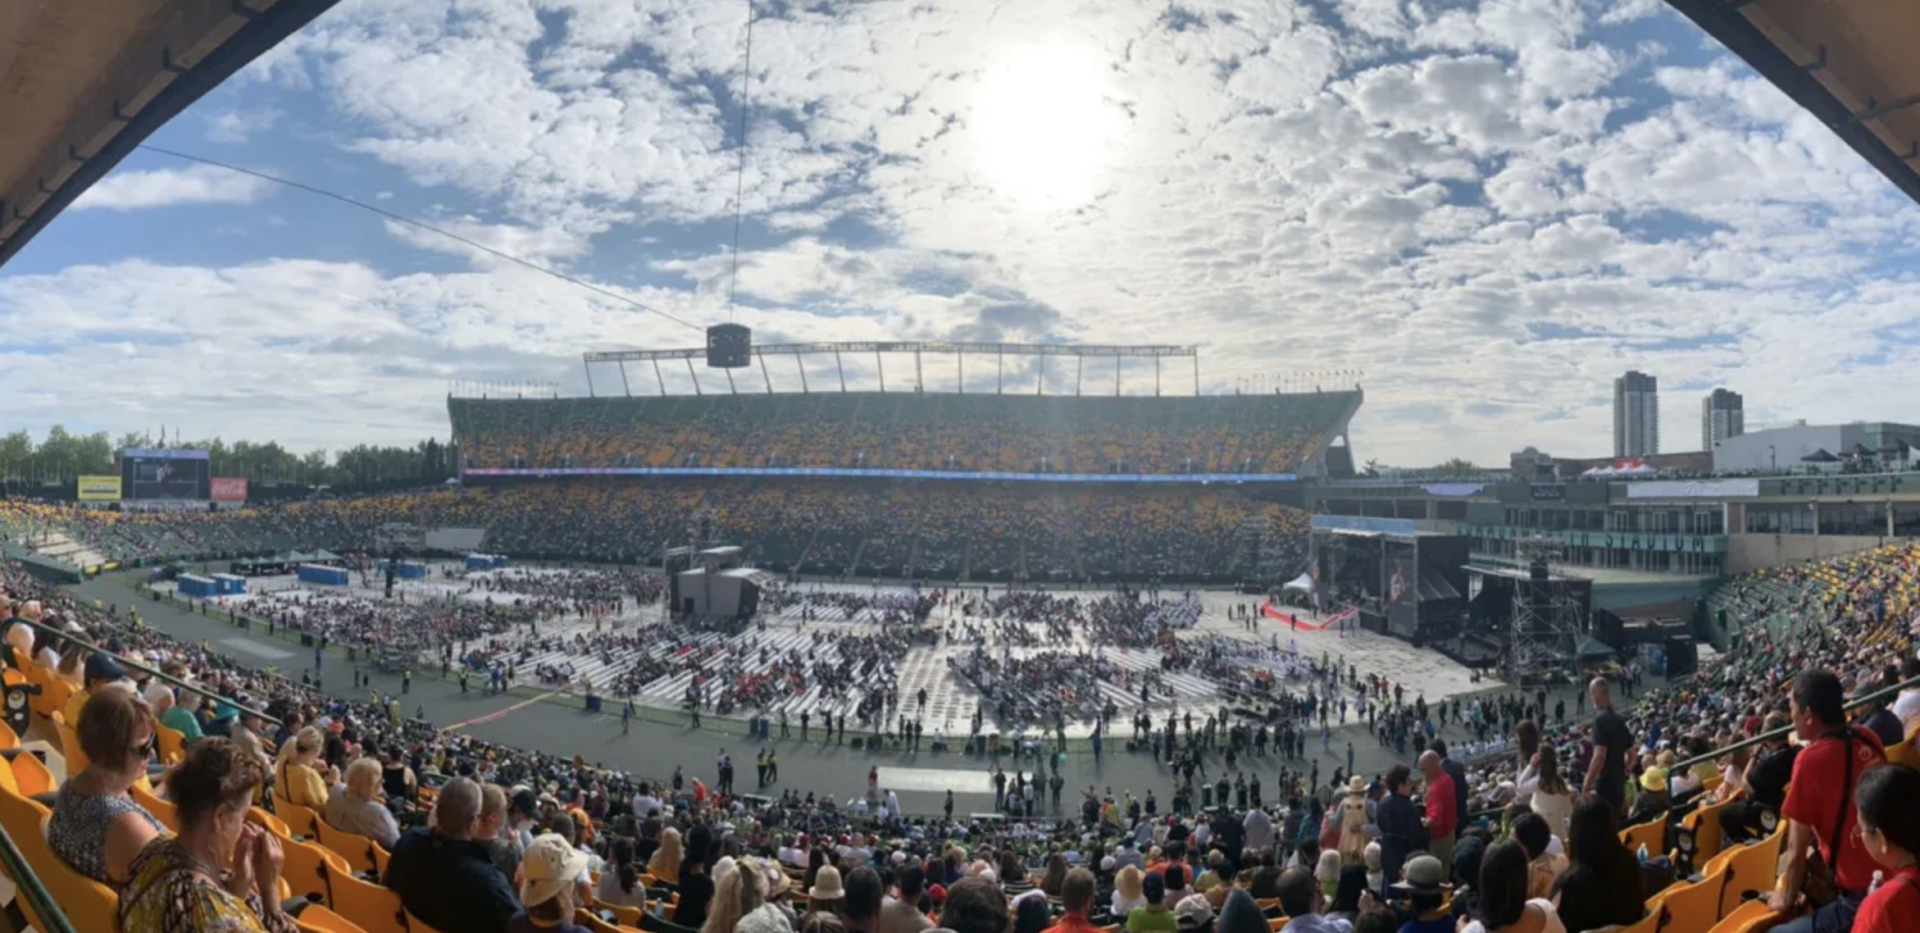 La messe du pape François, au stade Commonwealth d'Edmonton (Canada) | © Anne Kurian/IMEDIA